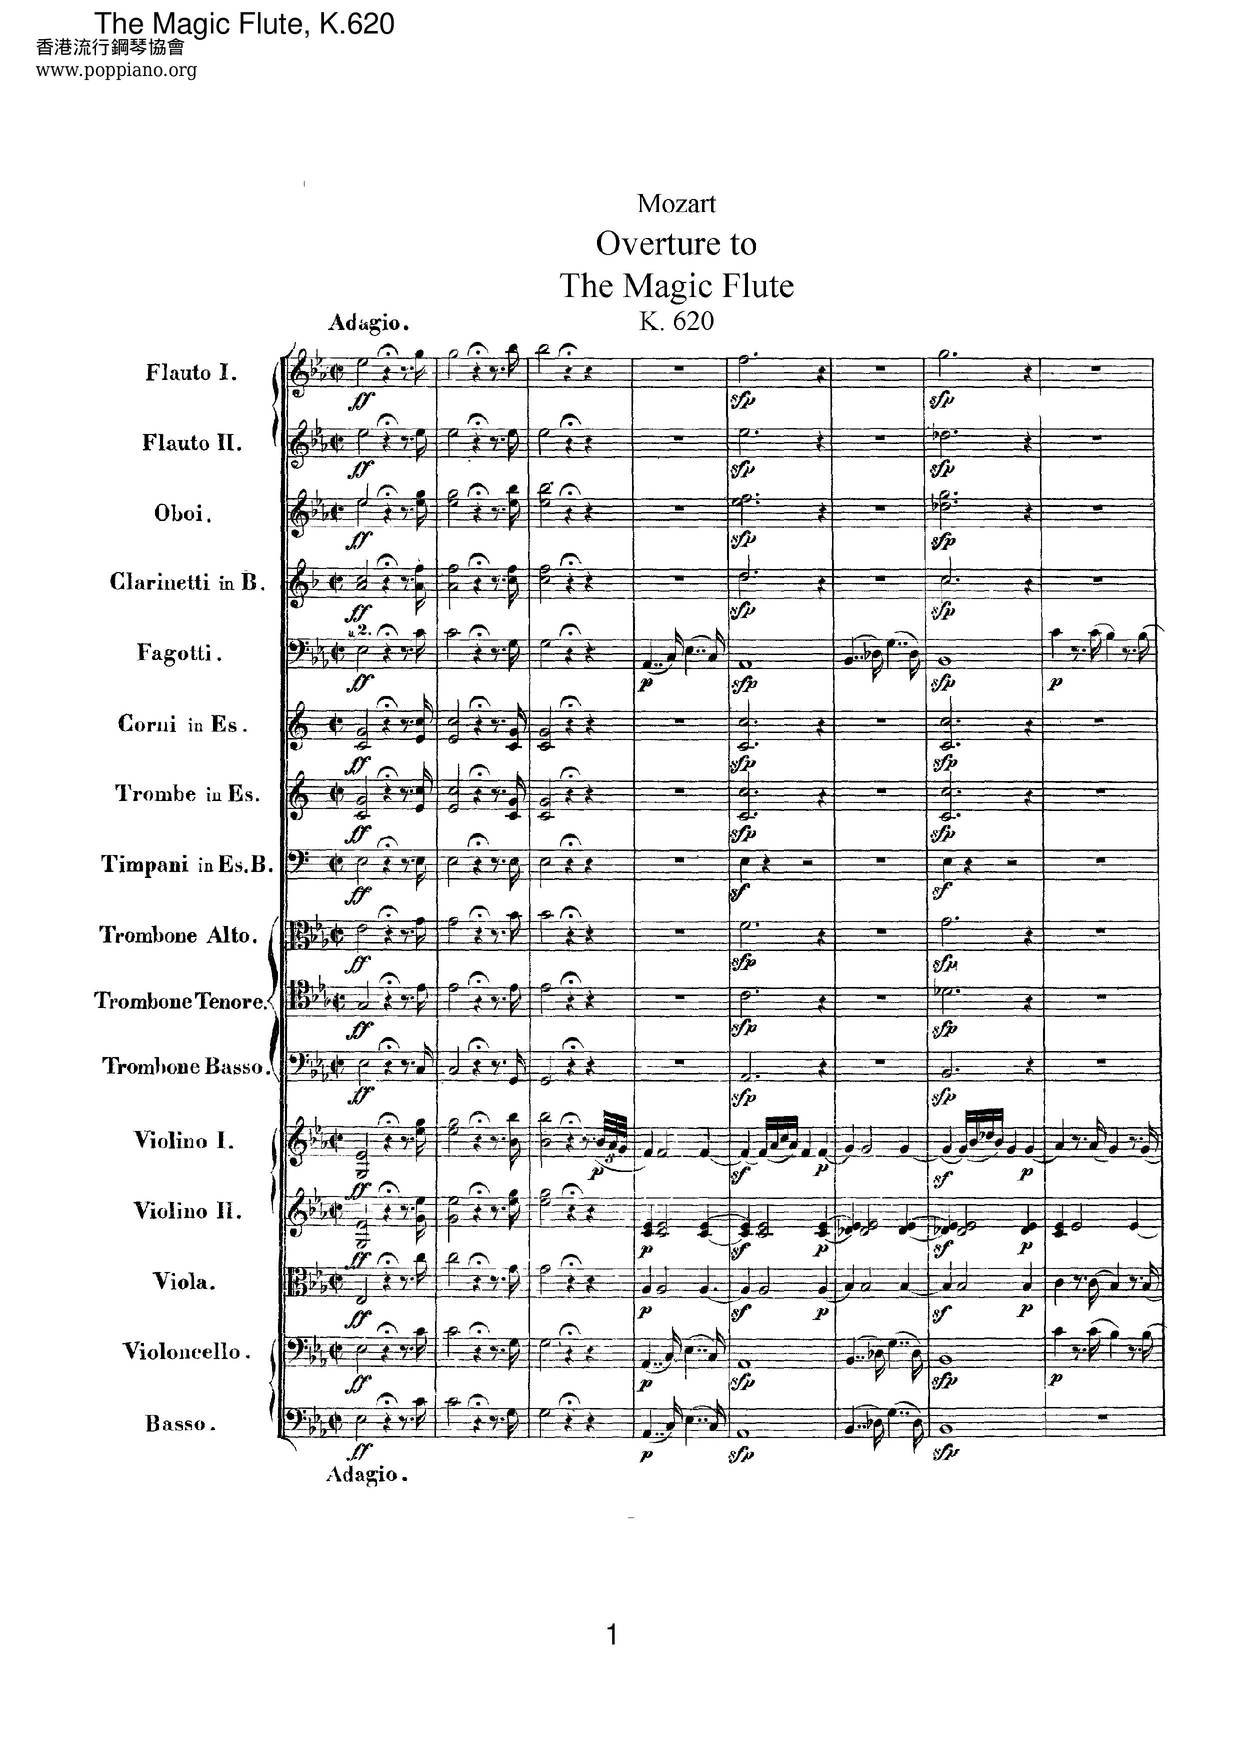 The Magic Flute, K. 620 Score